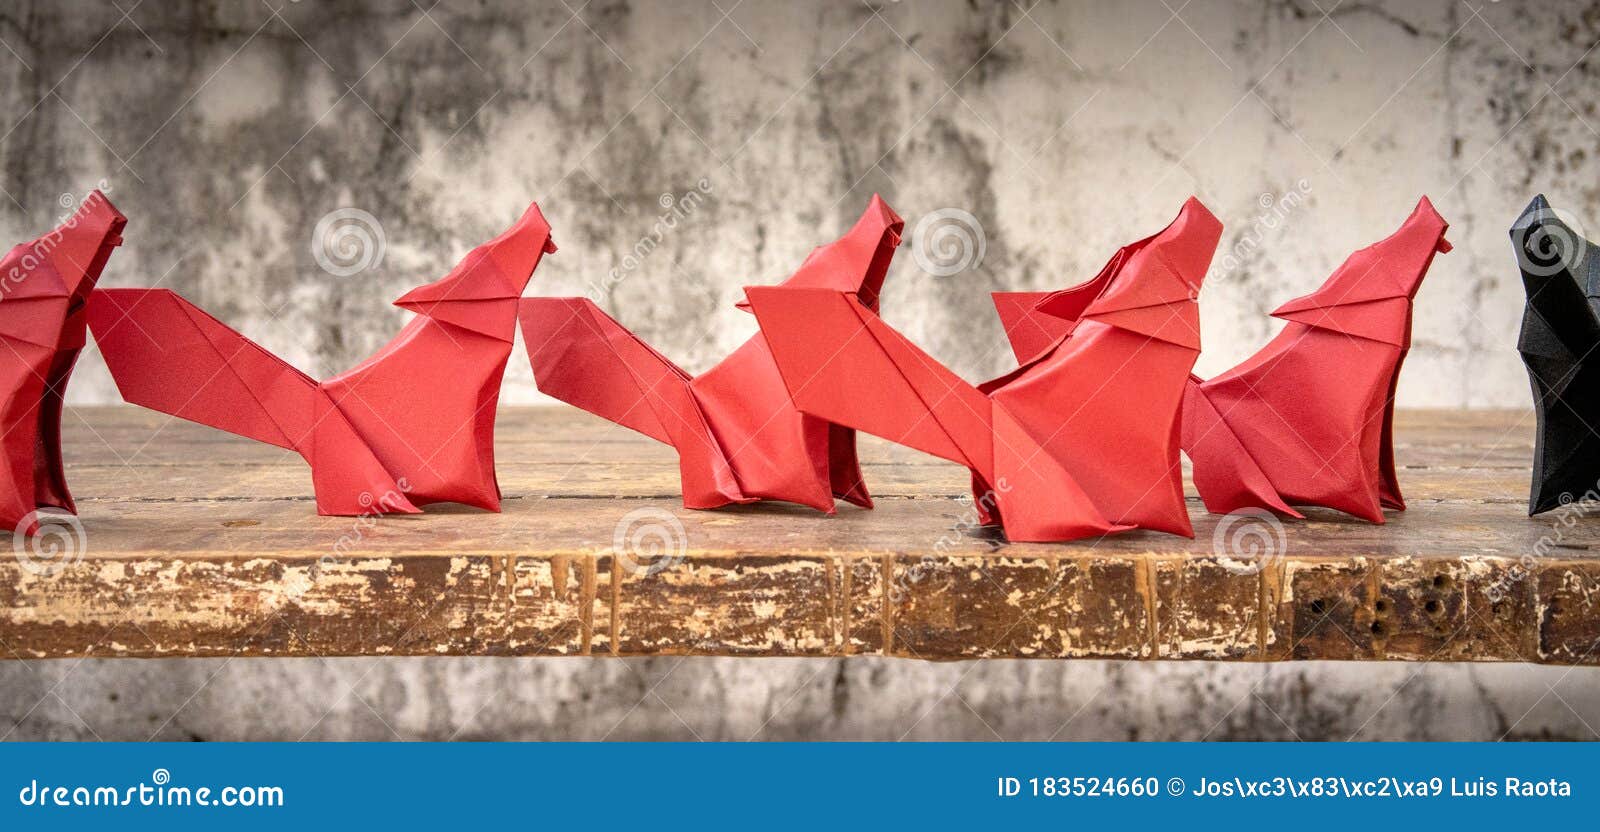 diferencia Confidencial Subir Origami De Ori Significa Plegado Y Kami Significa Papel Es El Arte Del  Plegado De Papel Foto de archivo - Imagen de primer, forma: 183524660